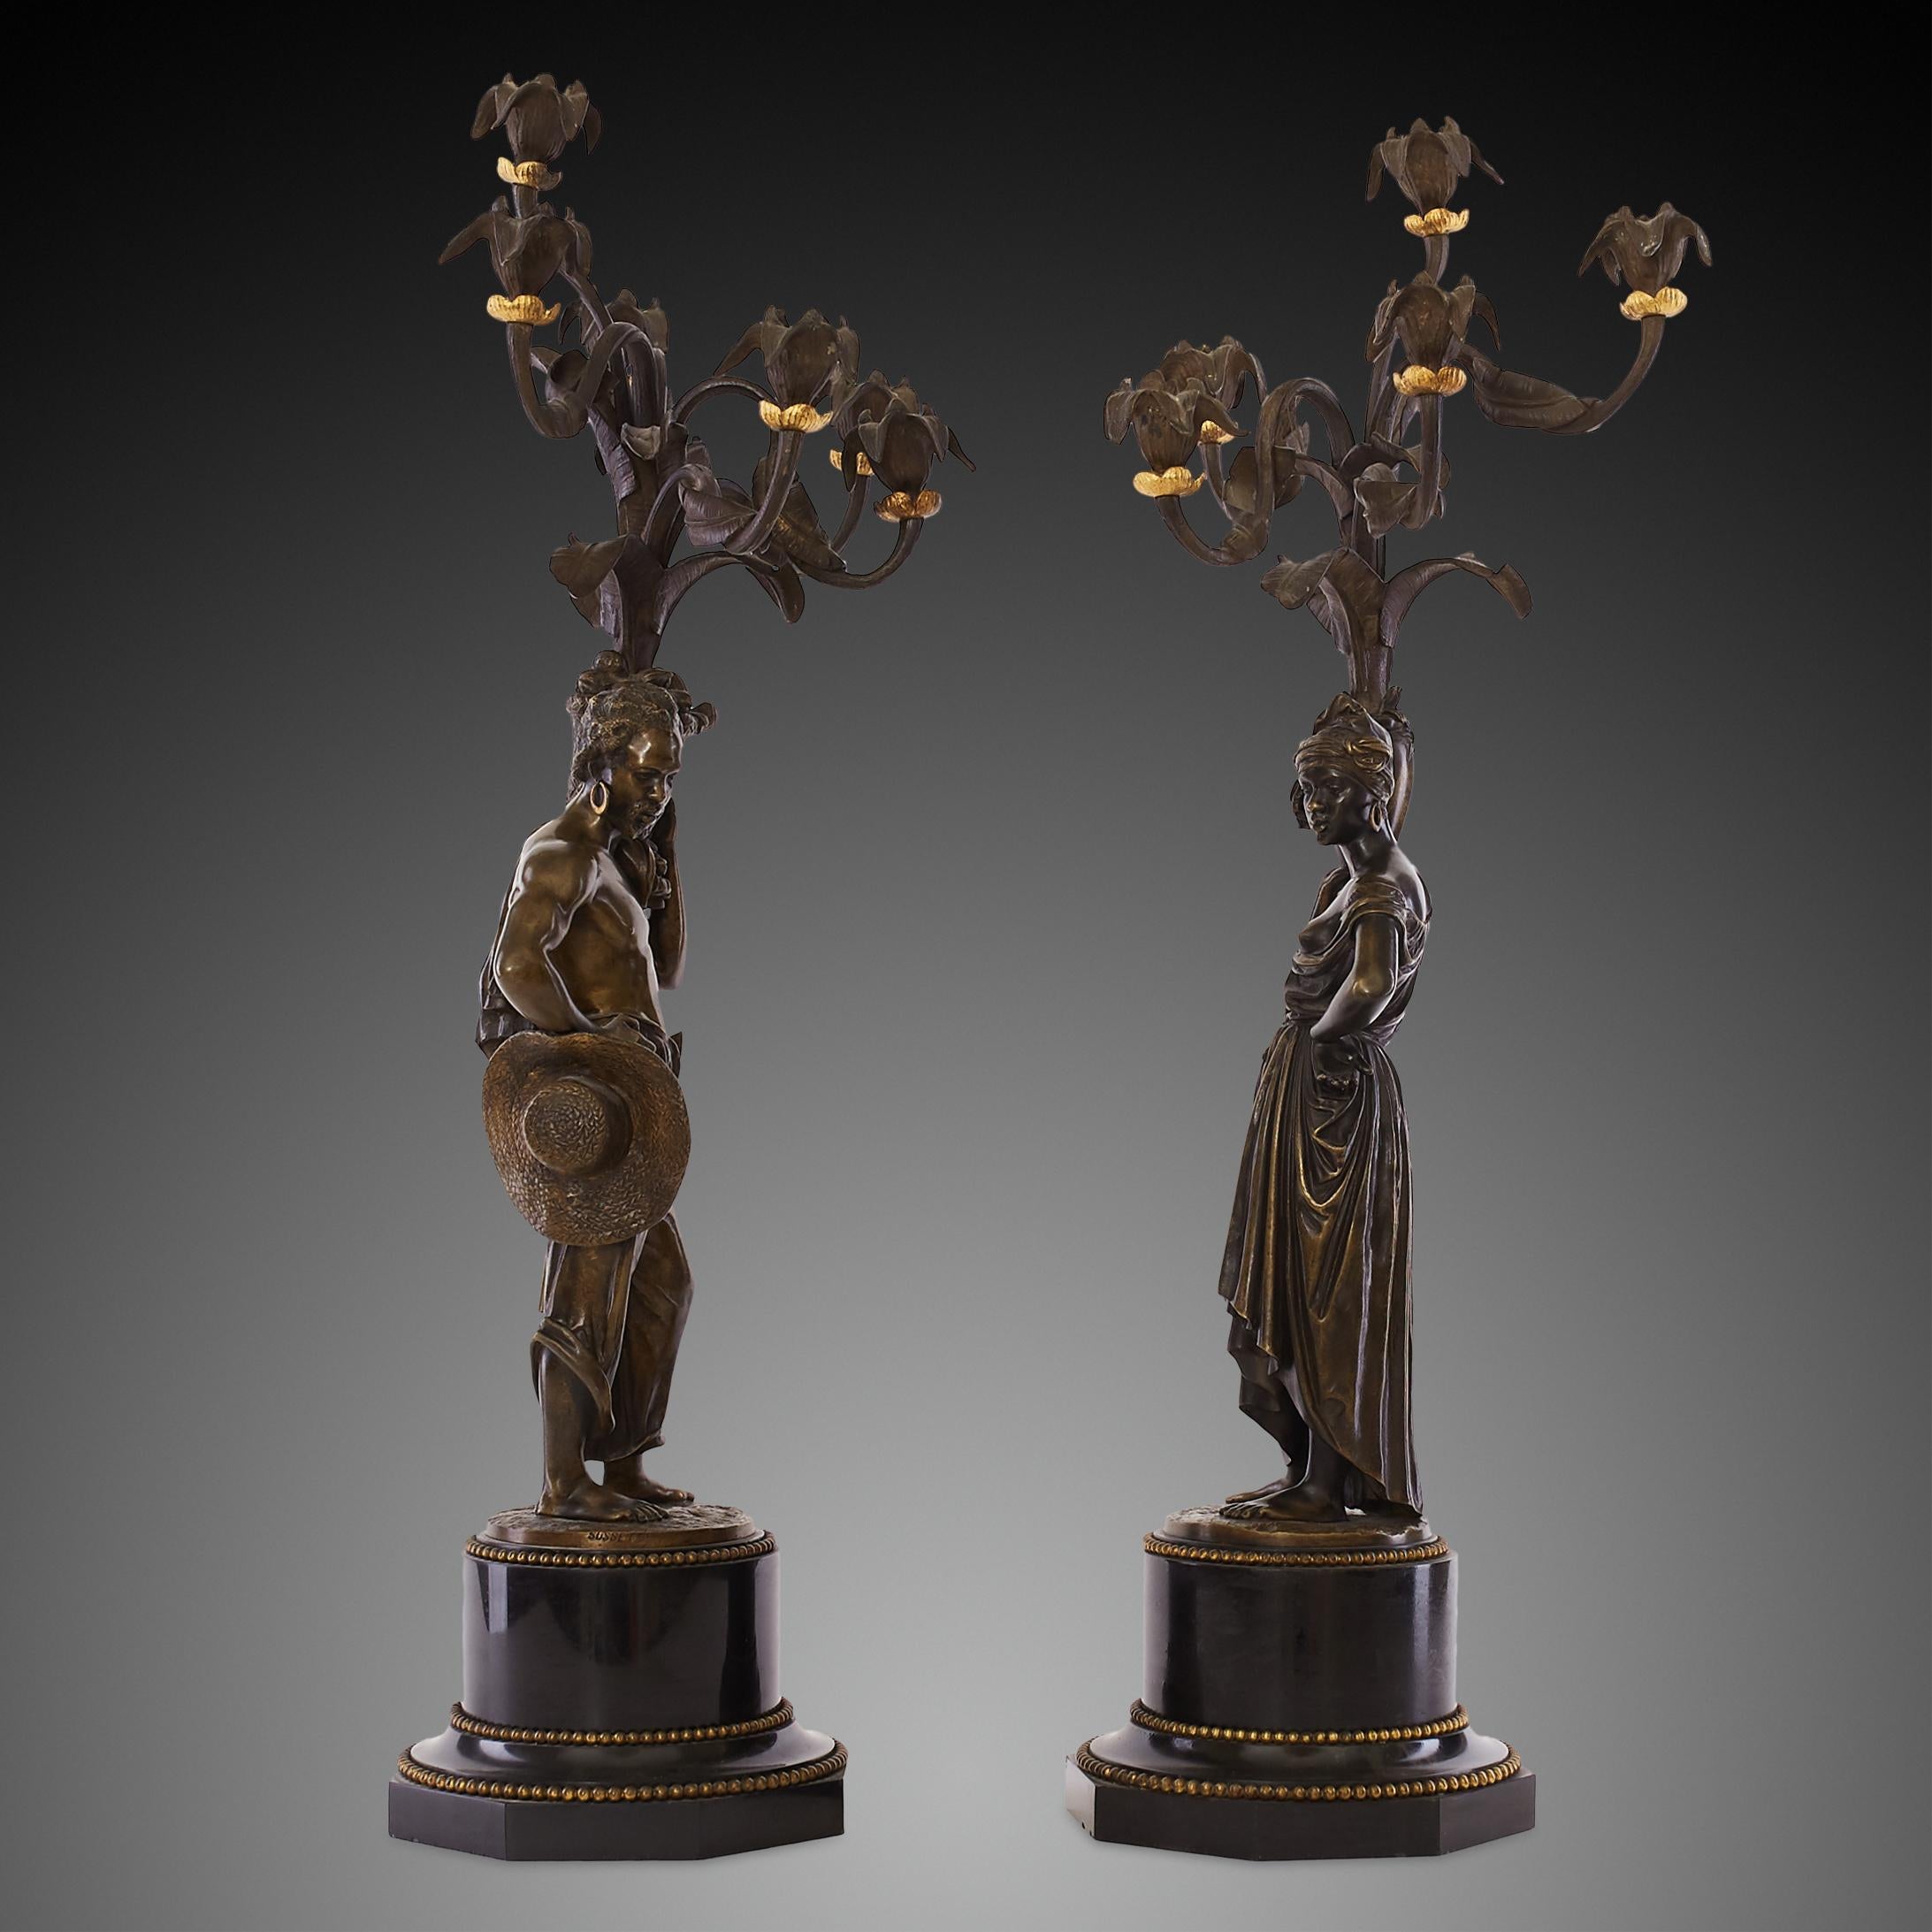 Ces candélabres figuratifs du XIXe siècle, finement moulés en bronze doré et bruni, sont montés sur des socles en marbre noir belge et signés par Charles Cumberworth. Les sculptures ont pour modèle des villageois africains. Le personnage féminin